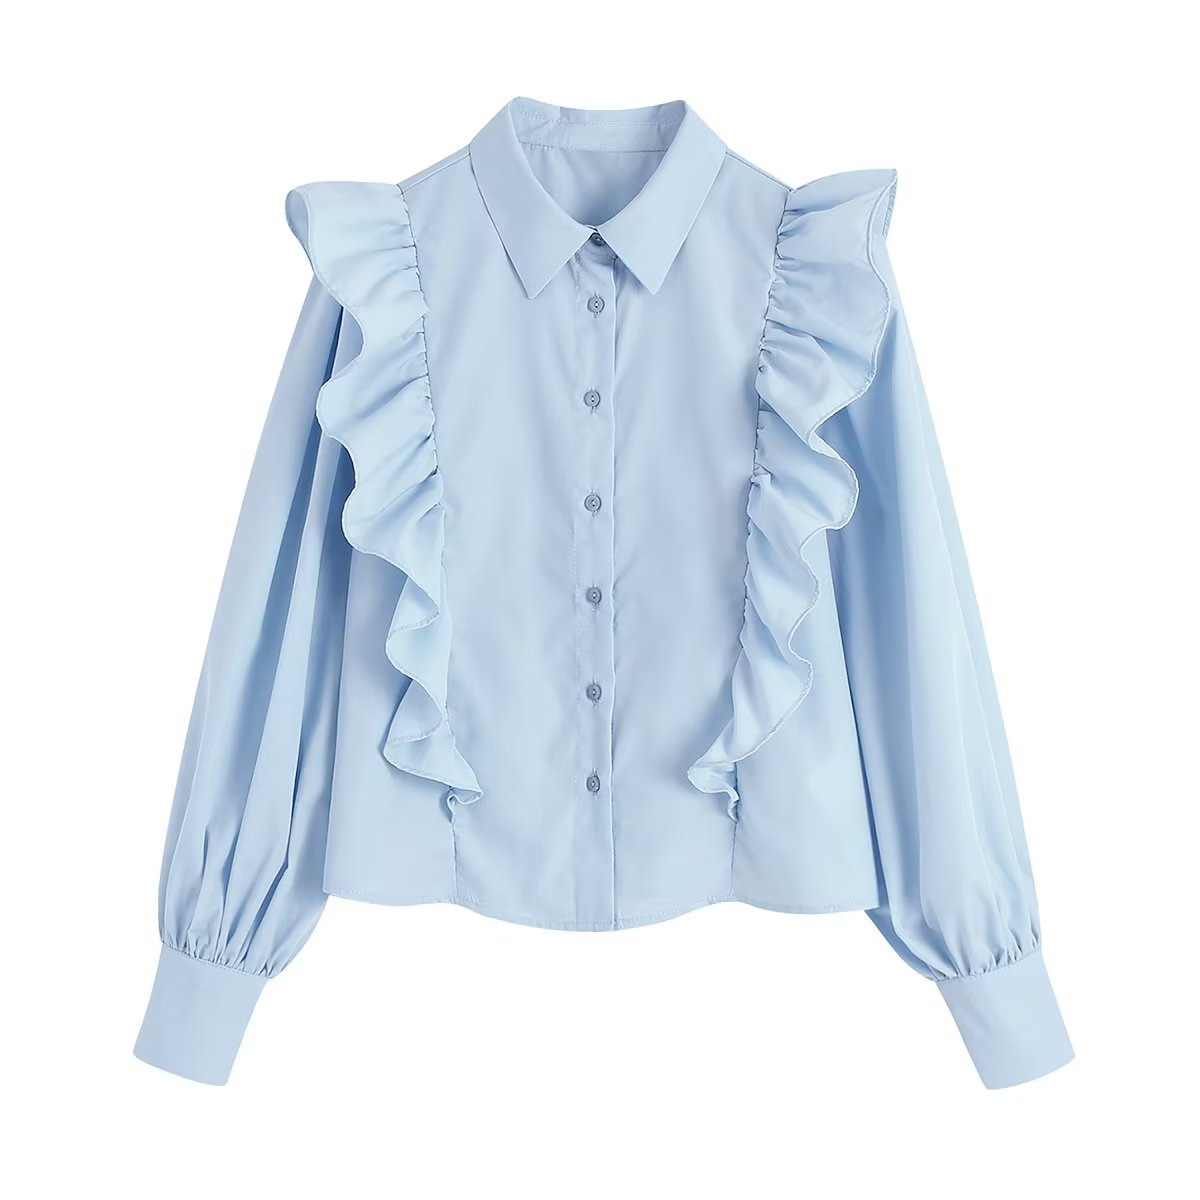 1988女装新款23年初春欧美风纯色荷叶边翻领单排扣减龄衬衫女衬衣1图